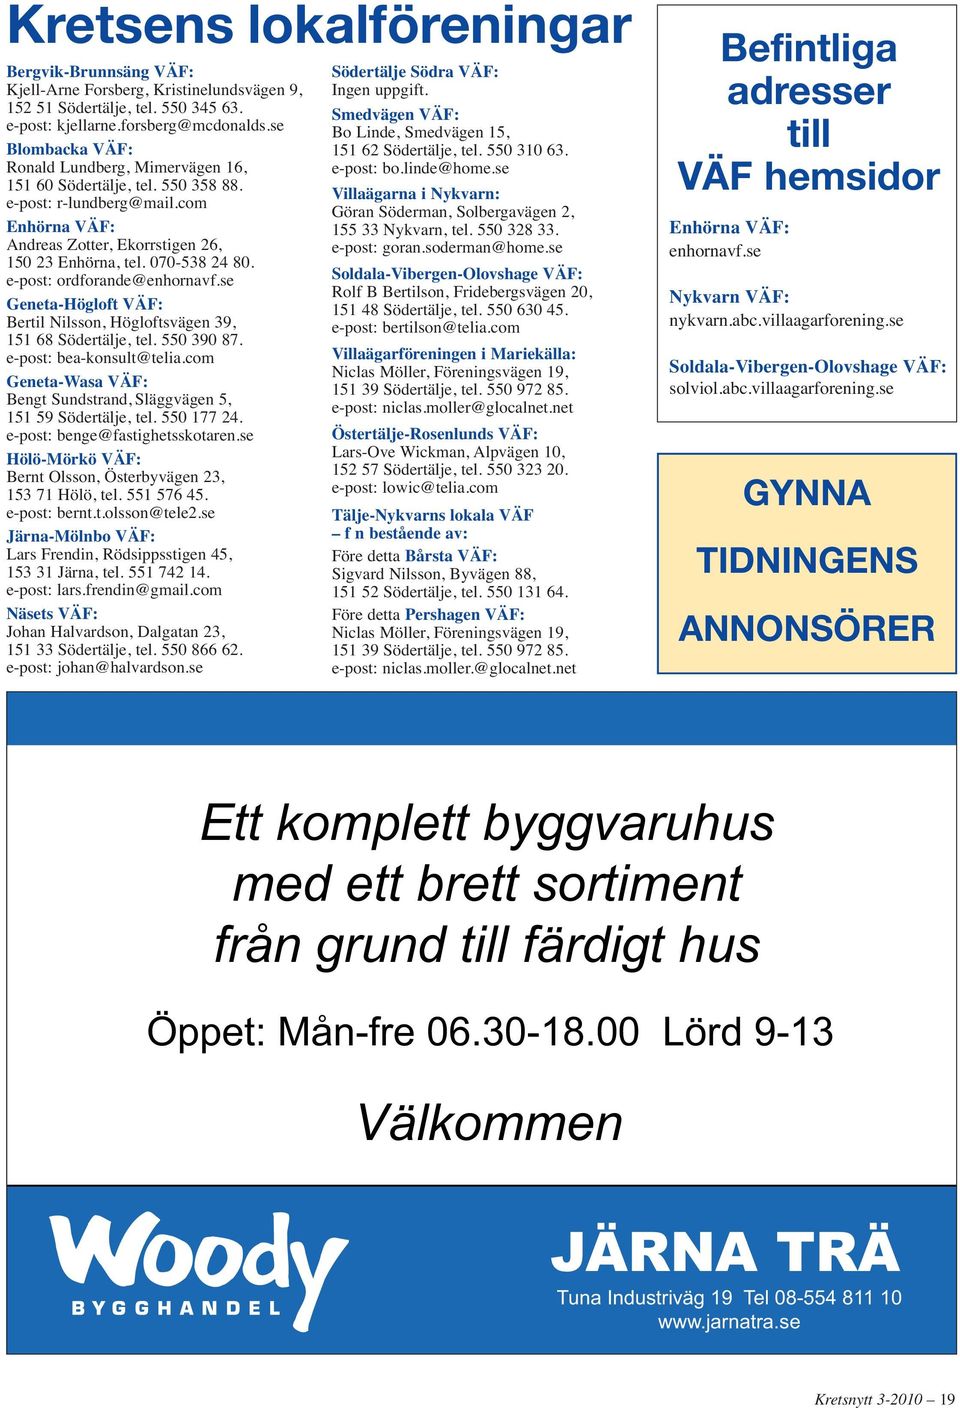 e-post: ordforande@enhornavf.se Geneta-Högloft VÄF: Bertil Nilsson, Högloftsvägen 39, 151 68 Södertälje, tel. 550 390 87. e-post: bea-konsult@telia.